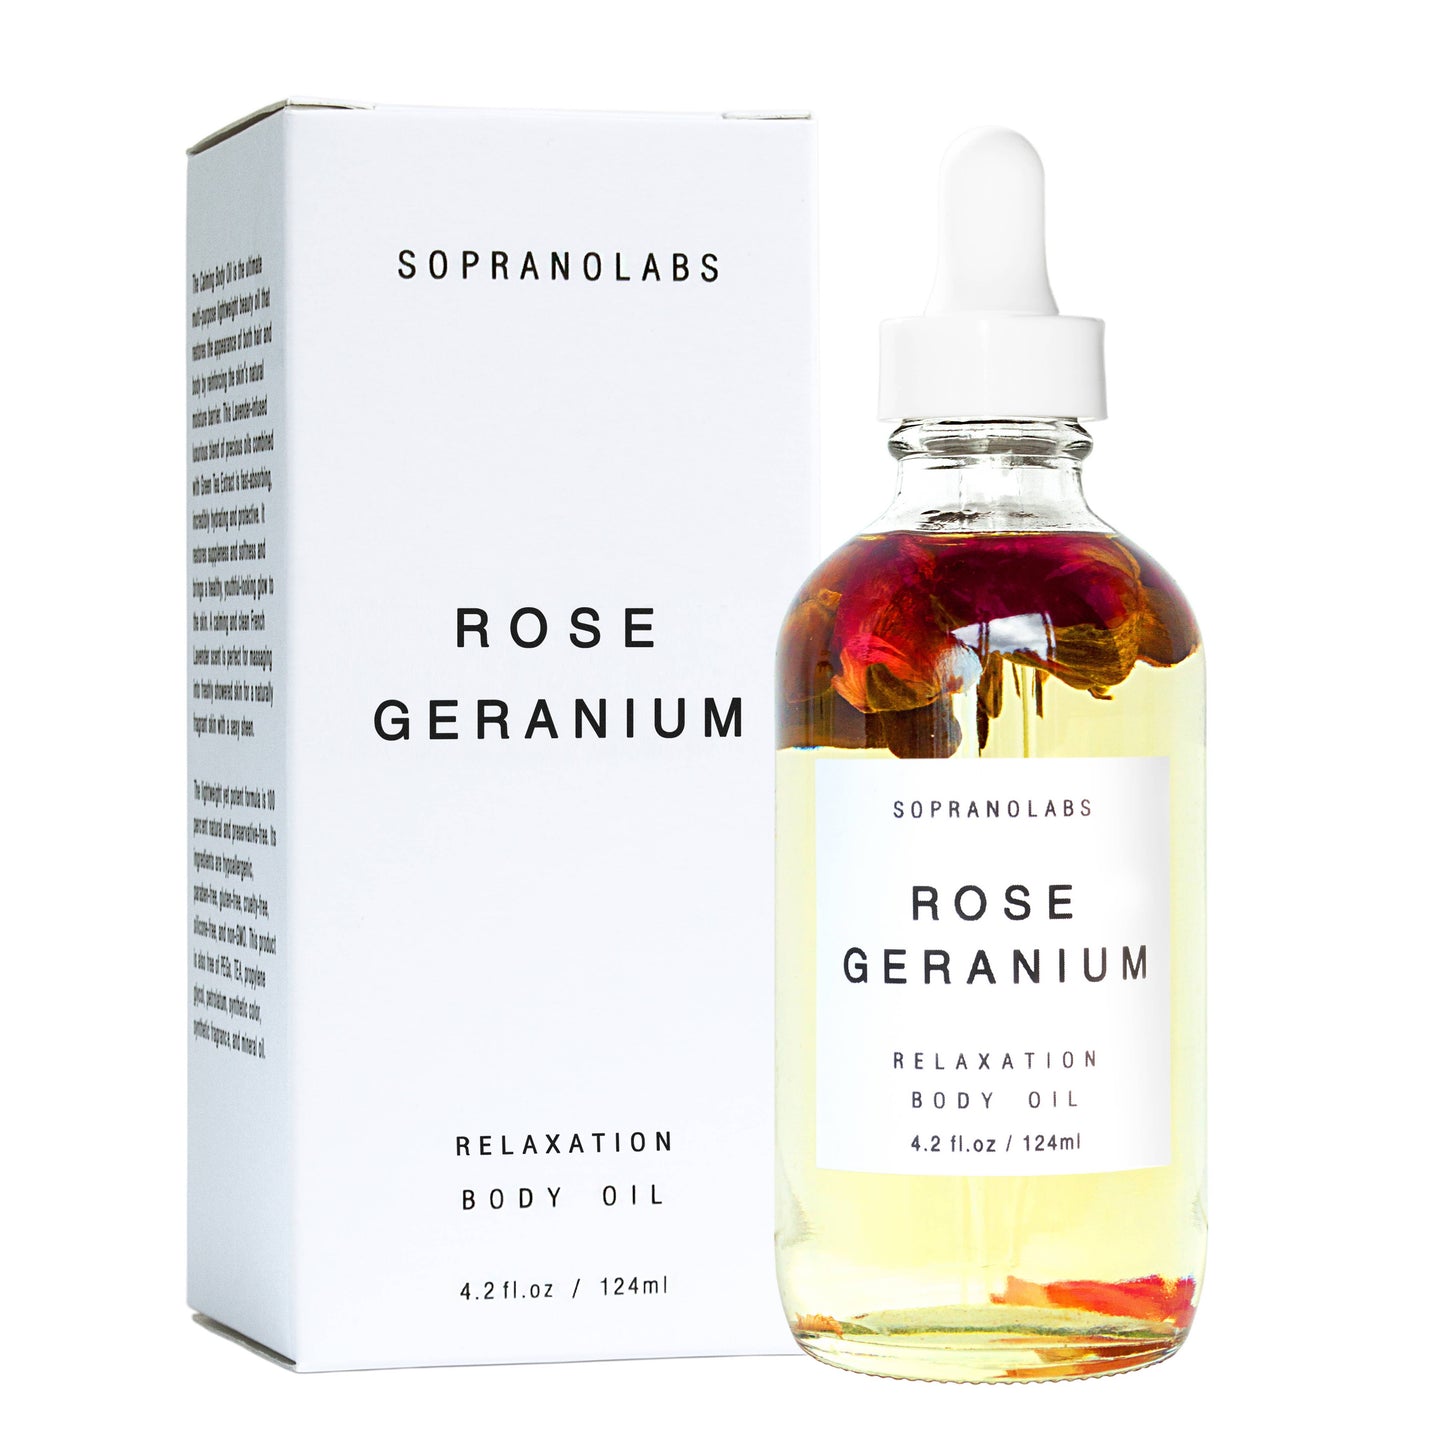 Rose Geranium Body Oil. SPA Gift for her